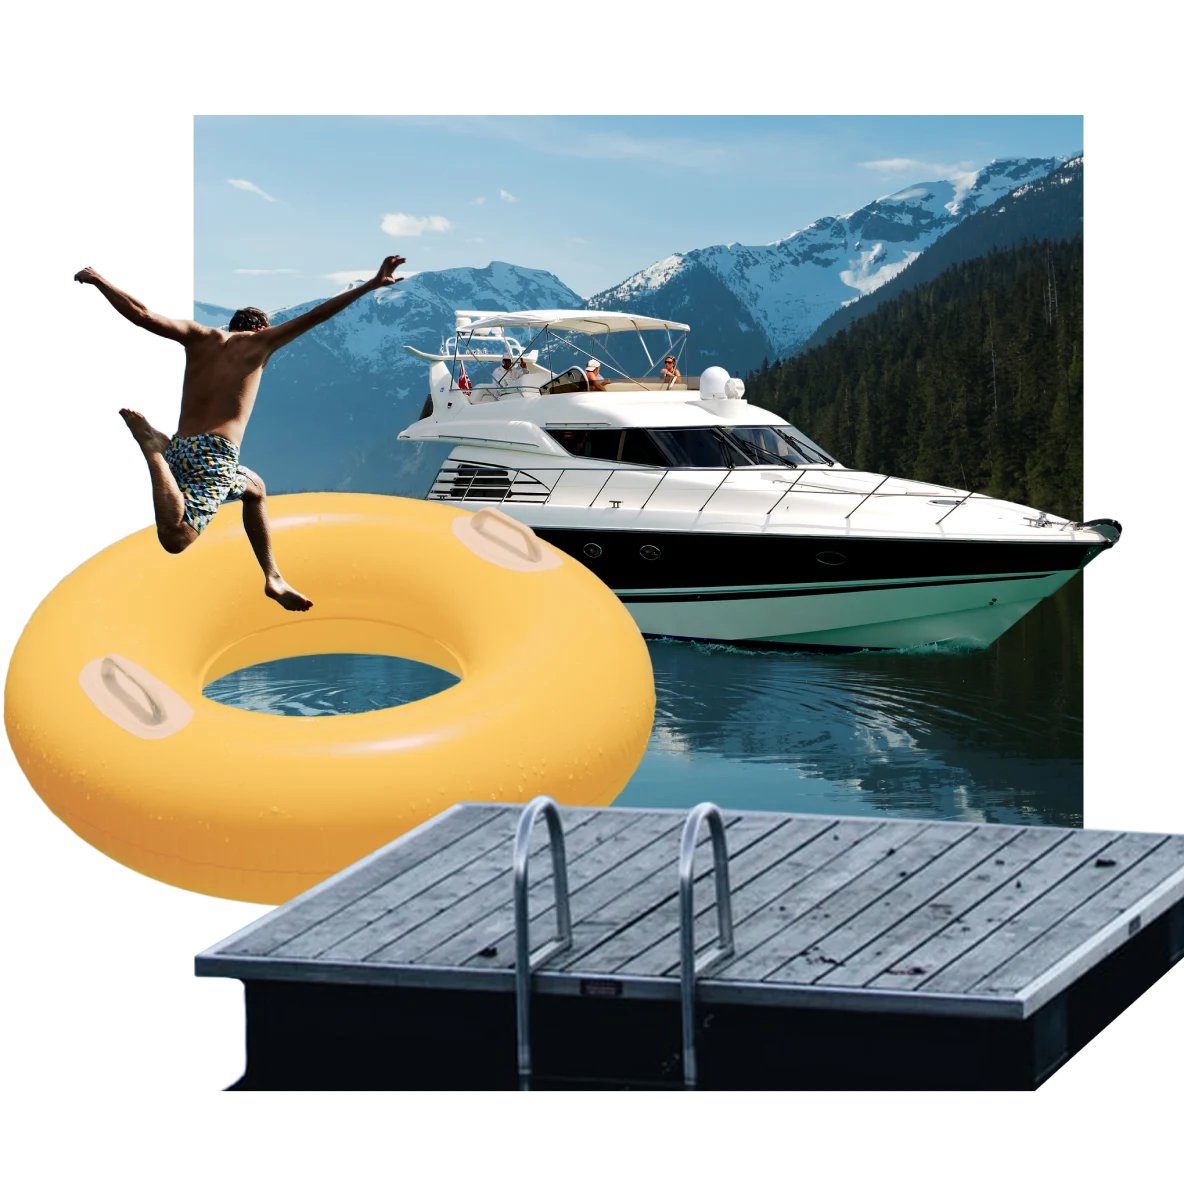 Collage sur le thème du lac. Au centre, bateau sur un lac bleu acier avec un ponton au premier plan. Nageur sautant dans une grande bouée jaune. Montagnes enneigées en arrière-plan.